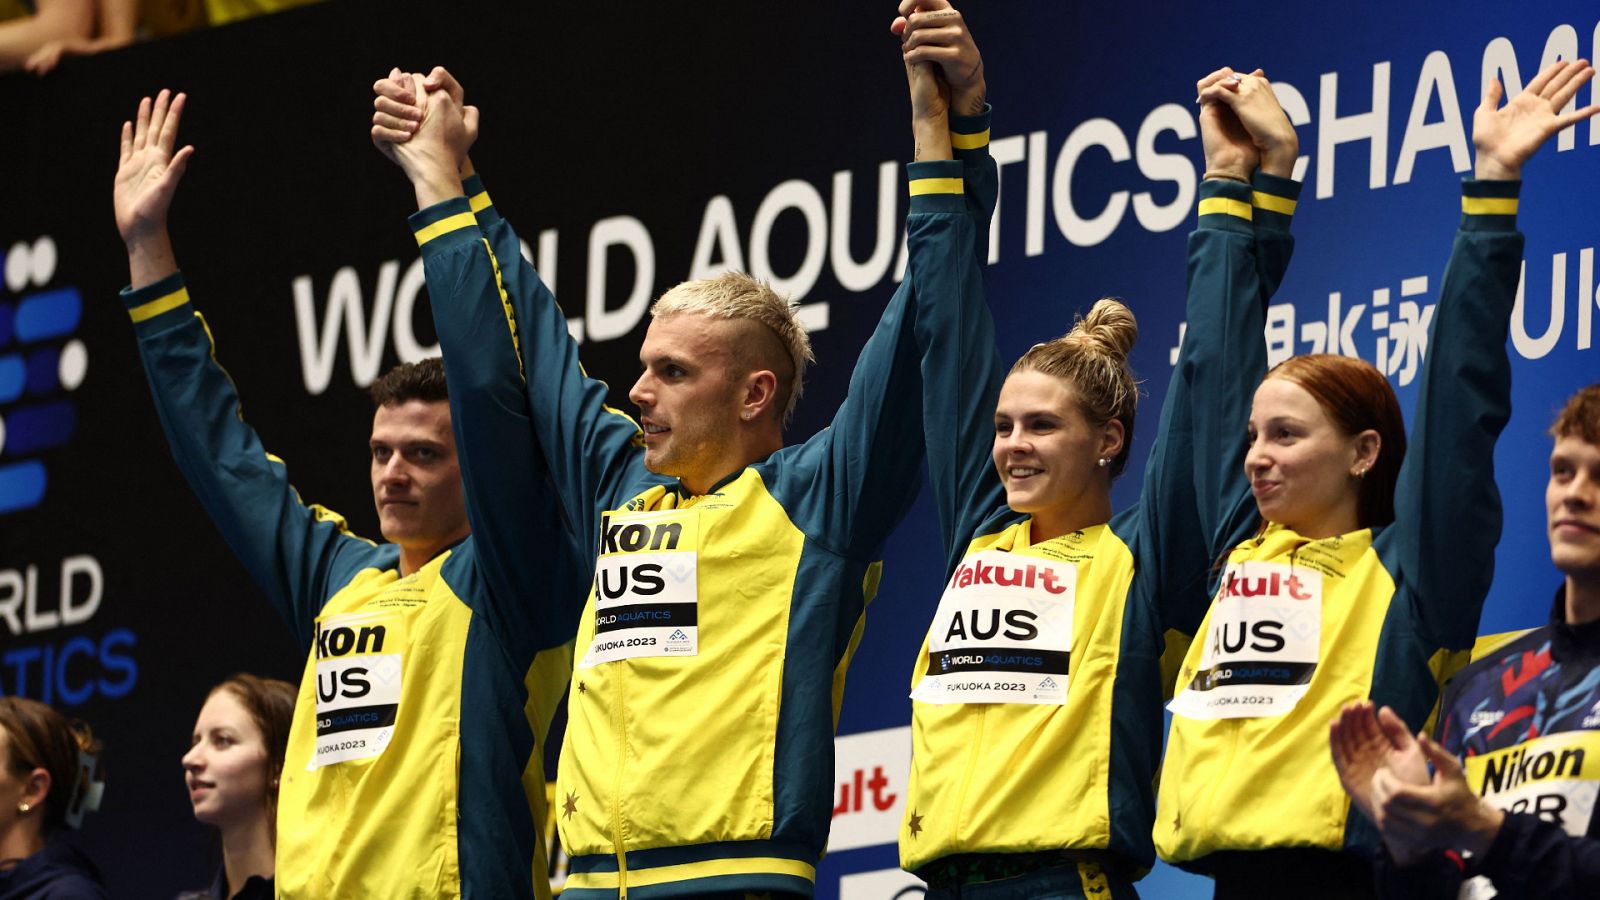 Vídeo: Australia suma su tercer récord del mundo en relevos con el 4x100 libre mixto